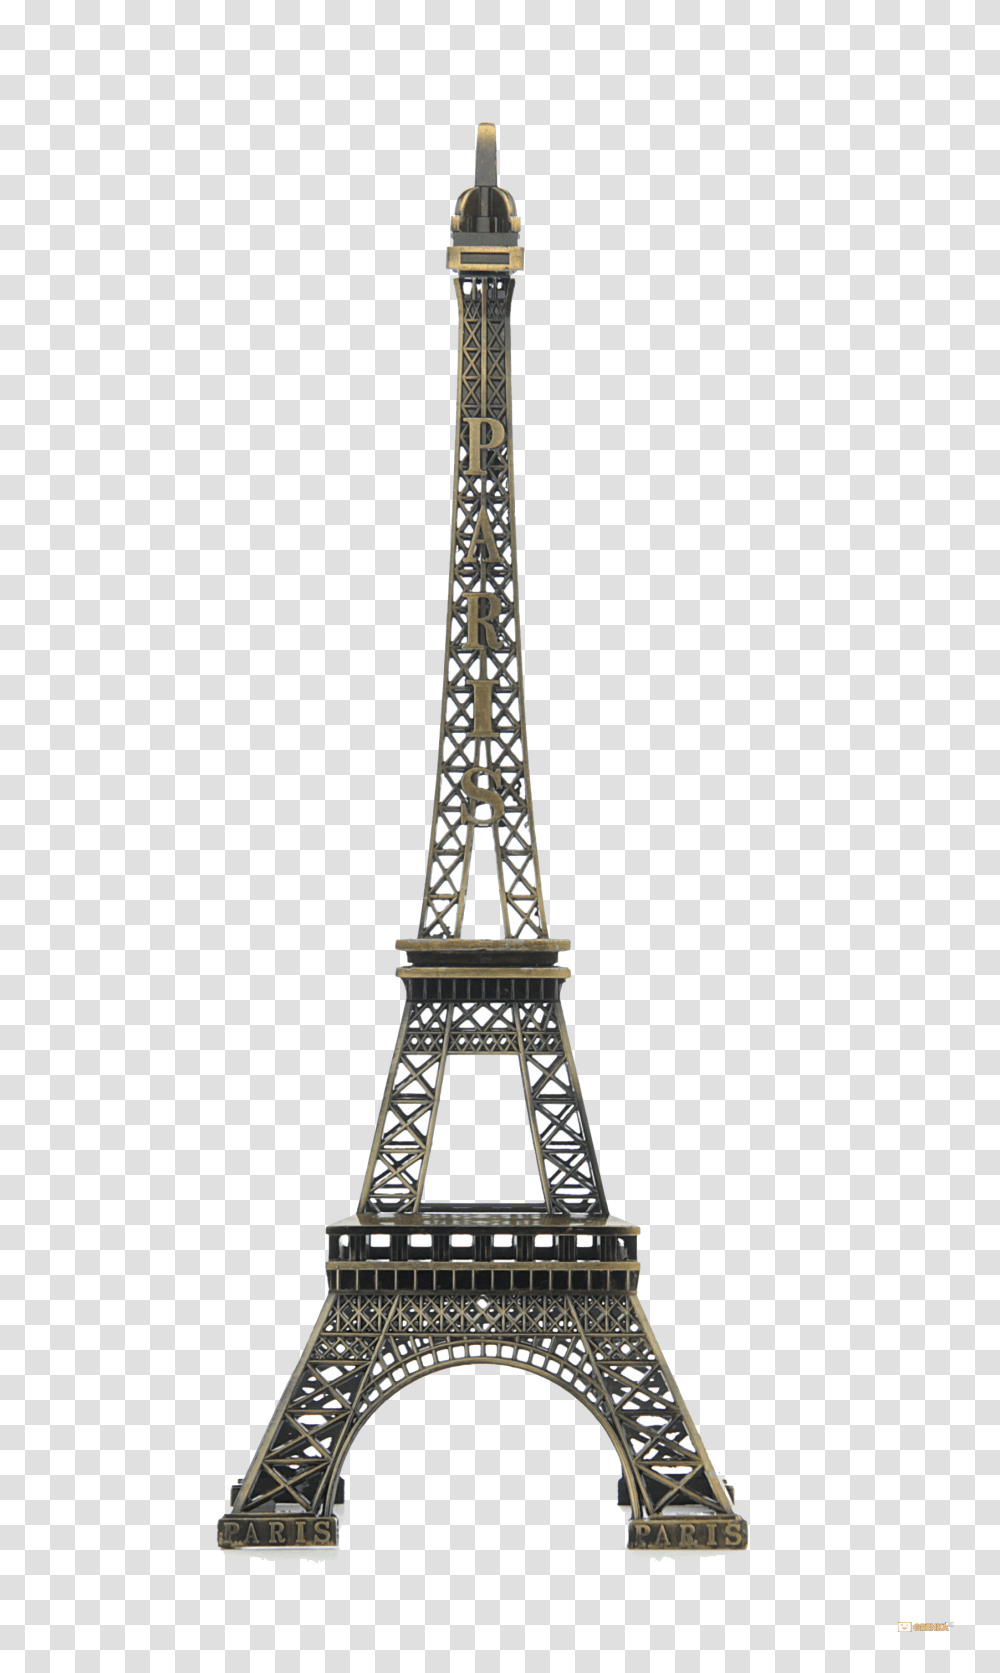 Eiffel Tower, Architecture, Monument, Building Transparent Png